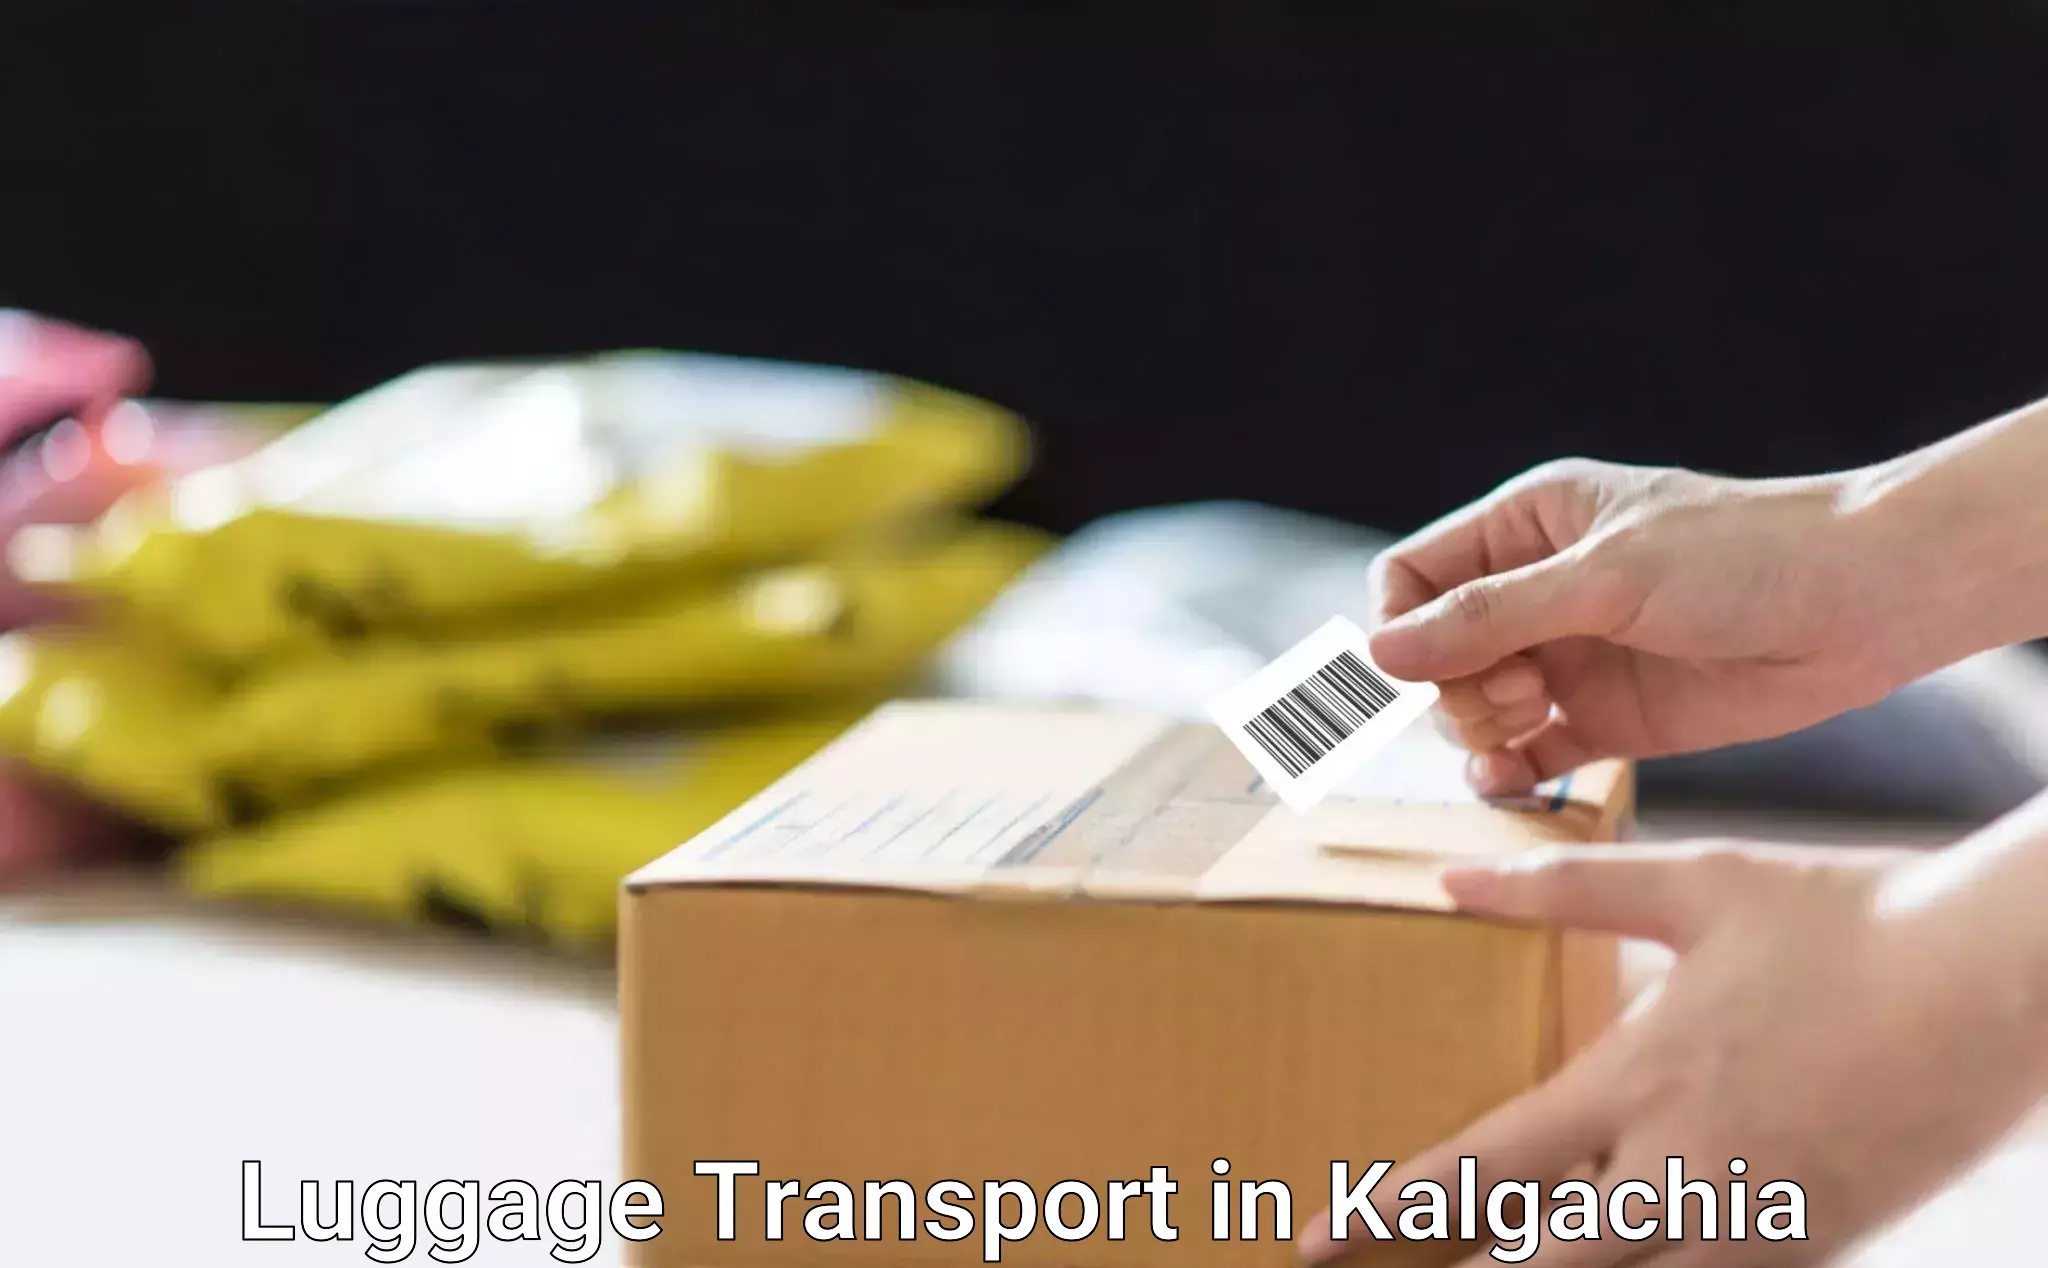 High-quality baggage shipment in Kalgachia